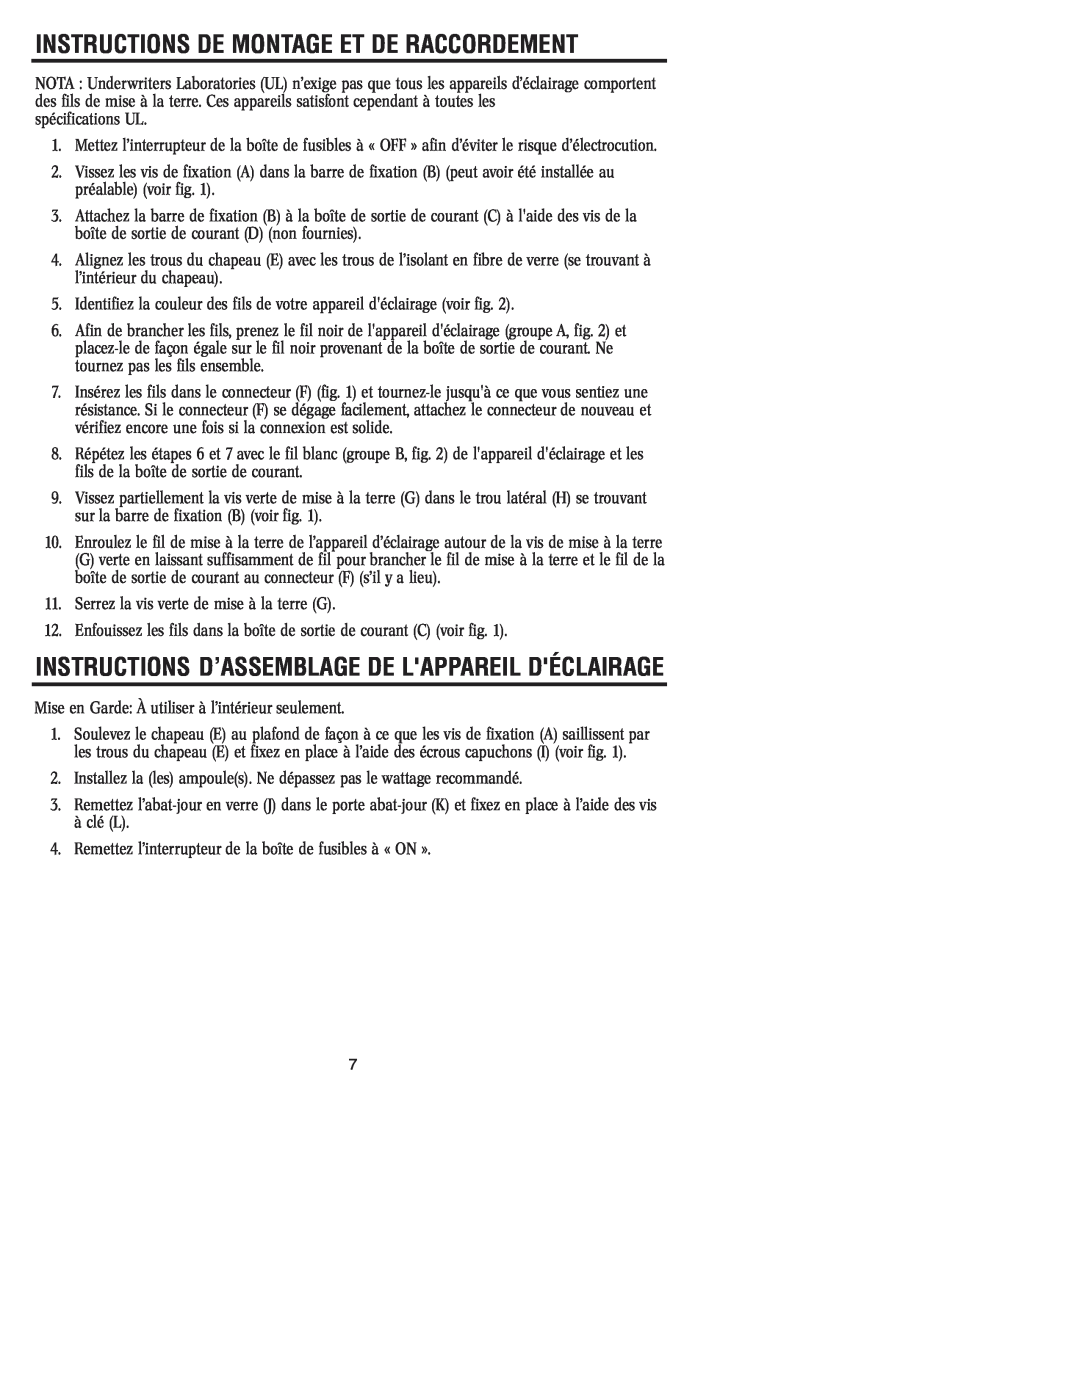 Westinghouse 81104 Instructions D’Assemblage De Lappareil Déclairage, Instructions De Montage Et De Raccordement 